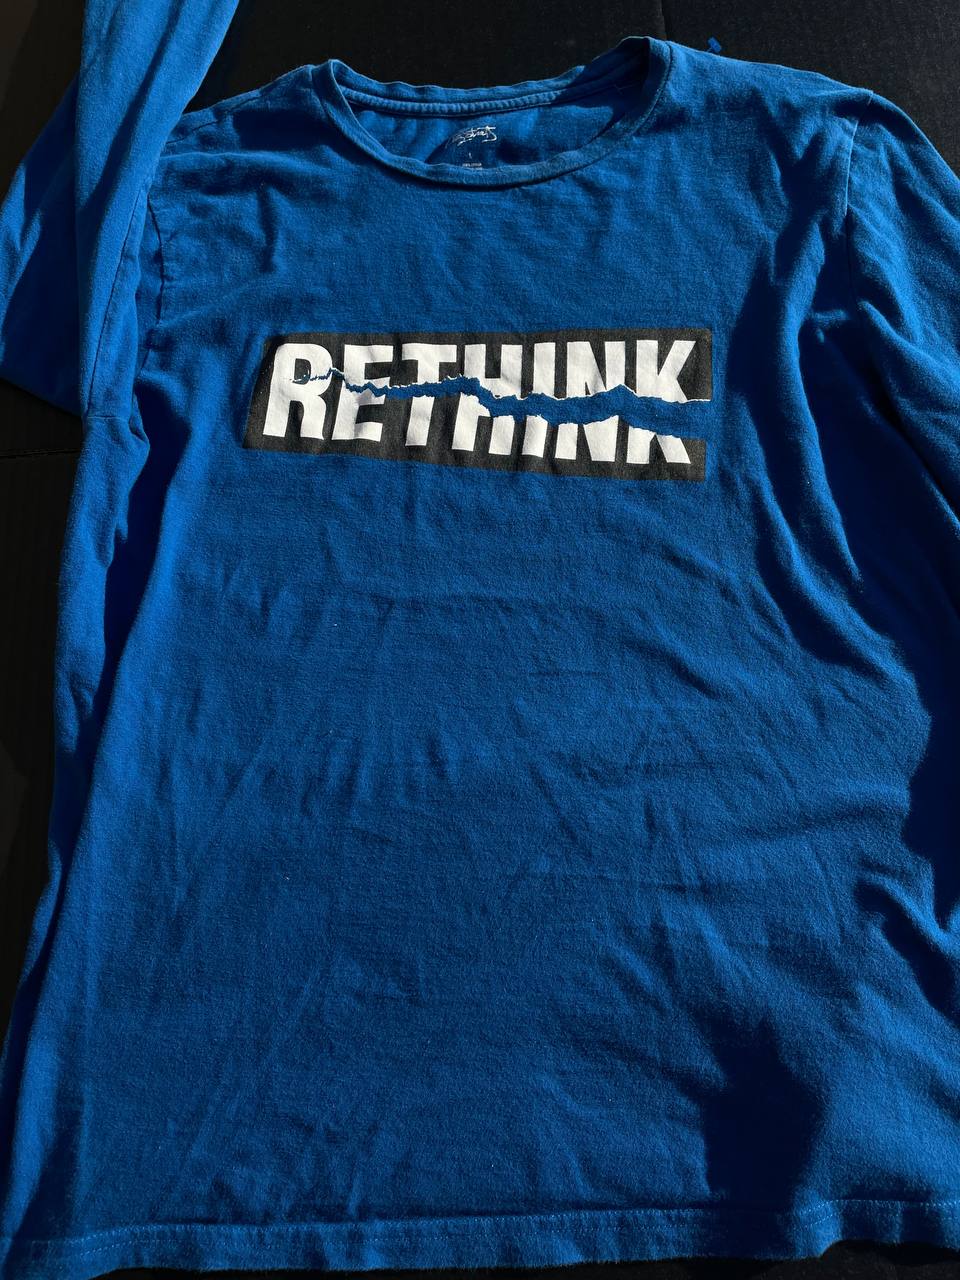 "Rethink" Large Blue Shirt